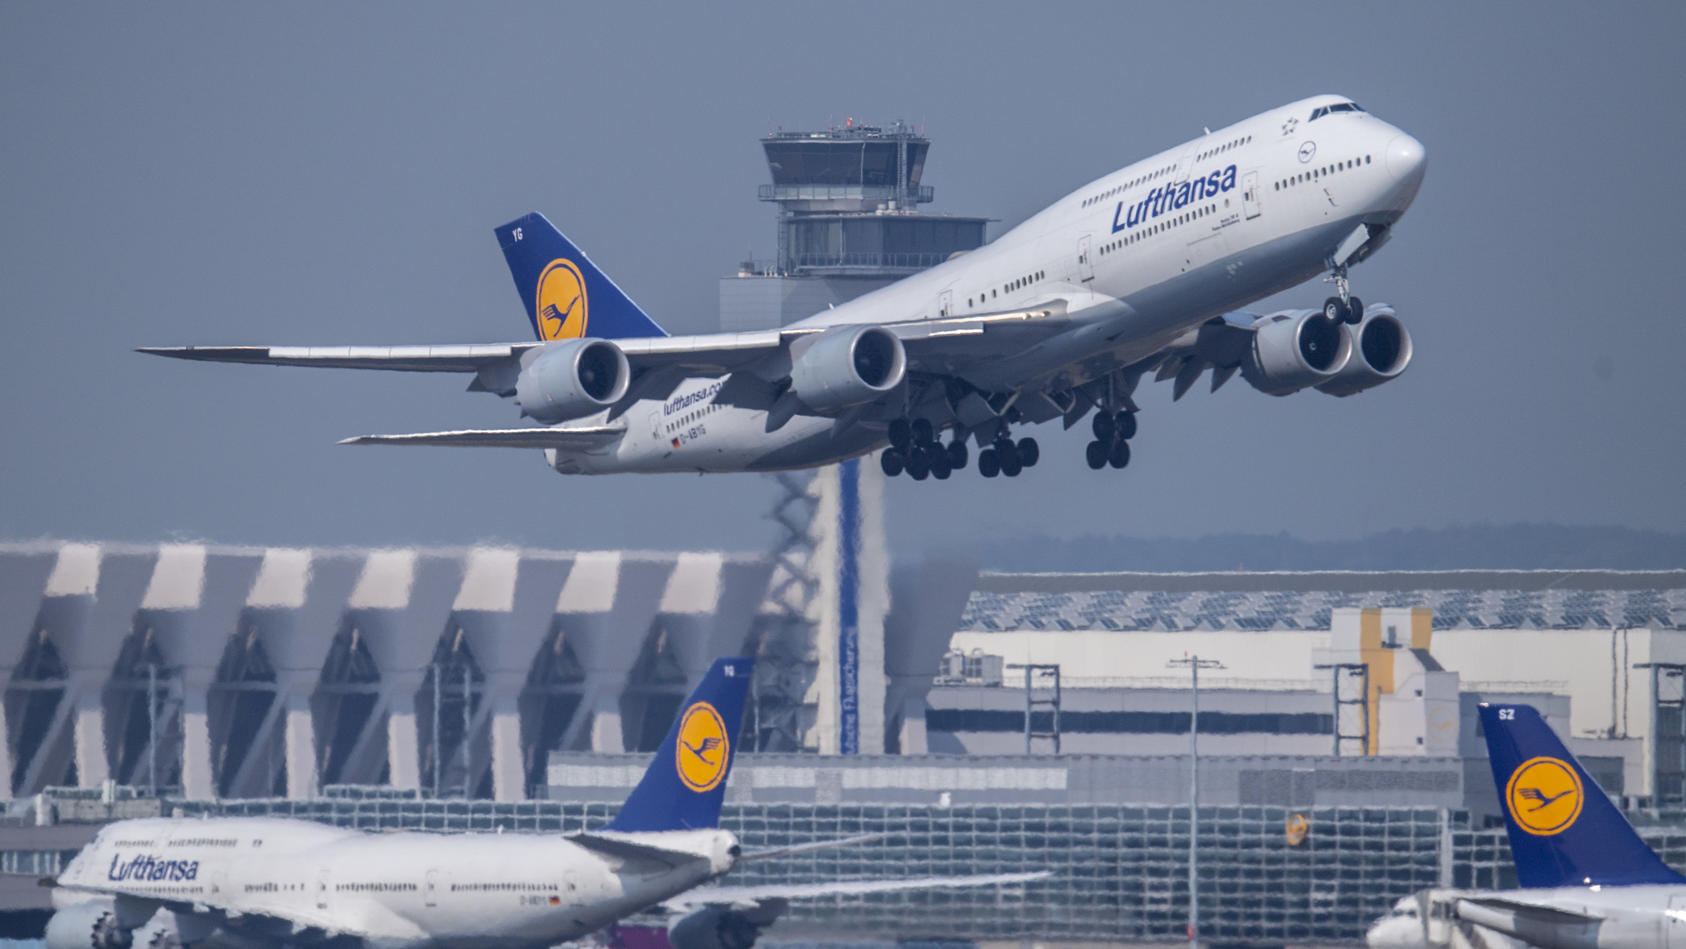 ARCHIV - 27.08.2019, Hessen, Frankfurt/Main: Eine Passagiermaschine vom Typ Boeing 747 der Lufthansa startet auf dem Flughafen. Mit einem weit überdurchschnittlichen Tarifabschluss hat die Lufthansa den Tarifkonflikt mit ihrem Bodenpersonal beigelegt